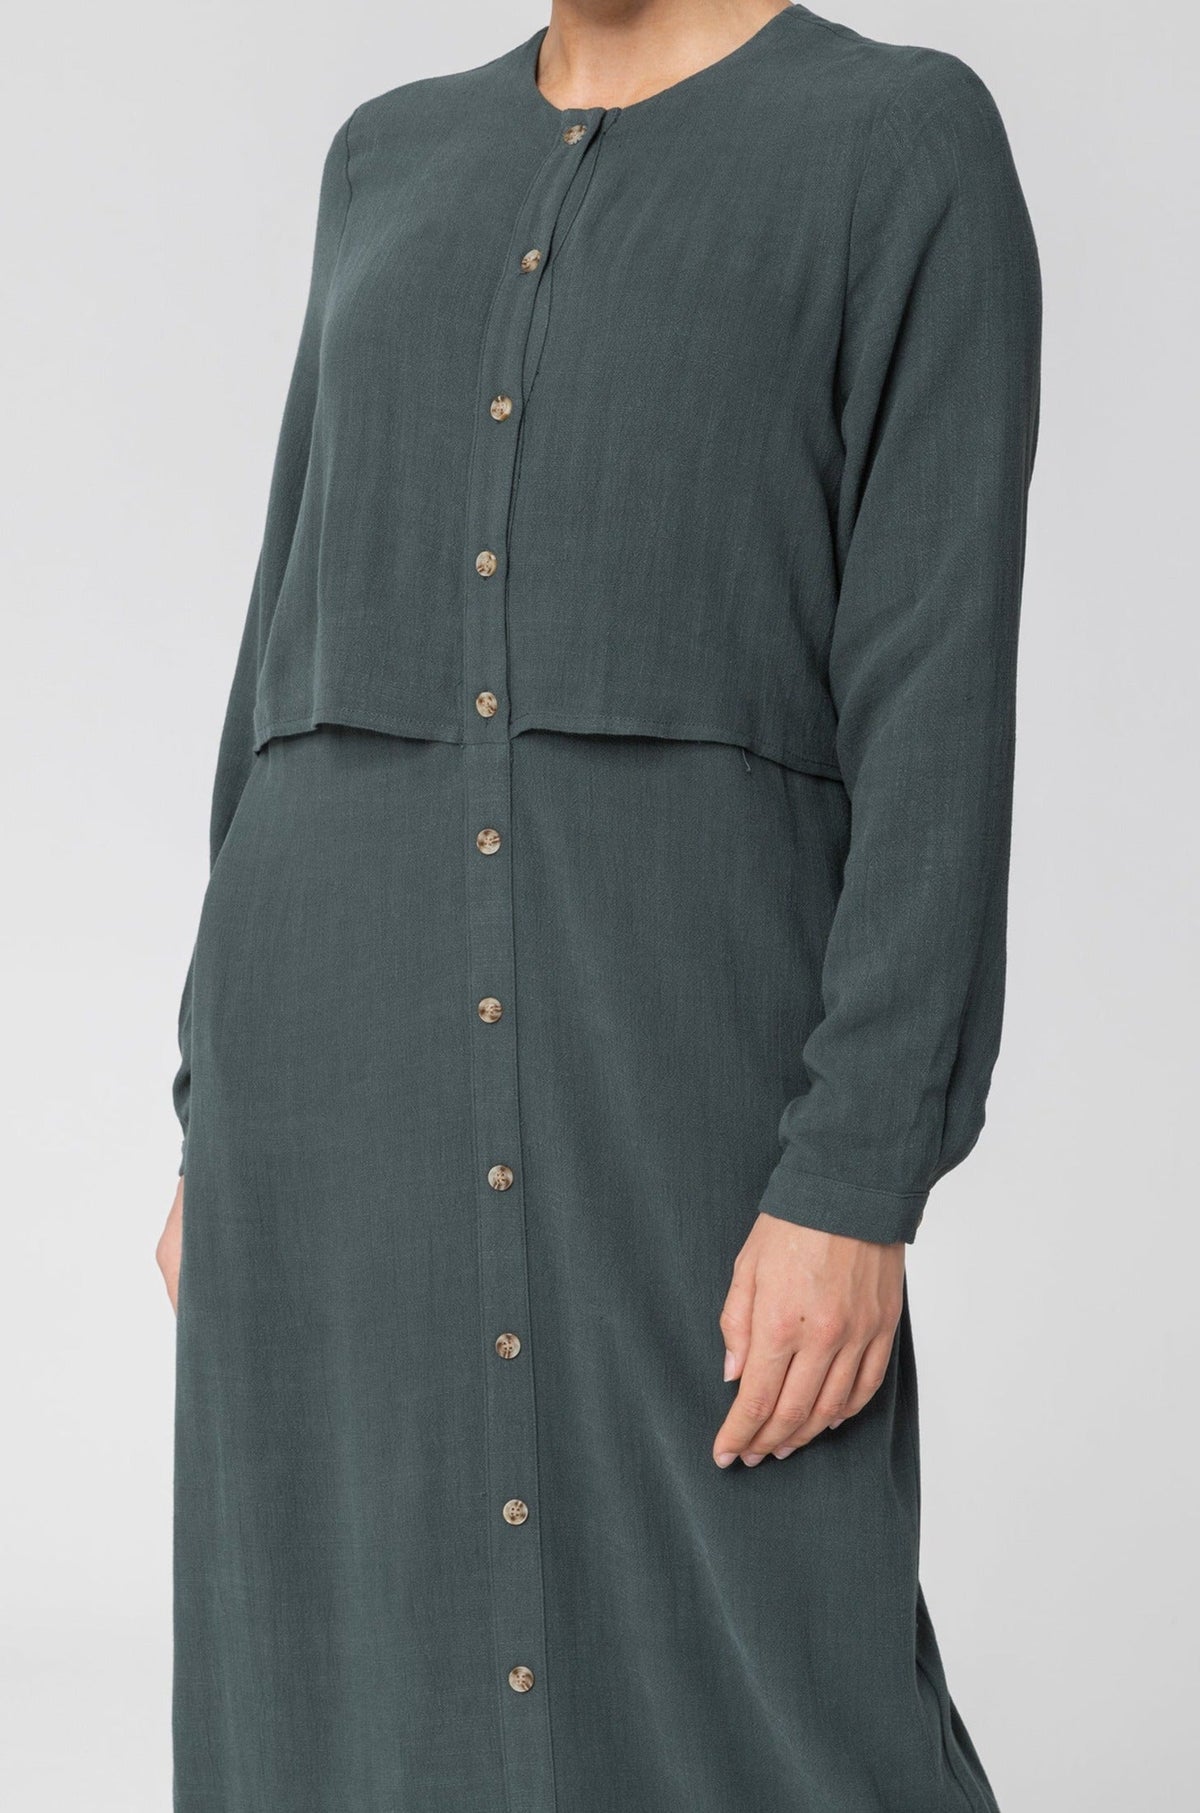 Sabah Cotton Linen Overlay Maxi Shirt Dress - Teal epschoolboard 